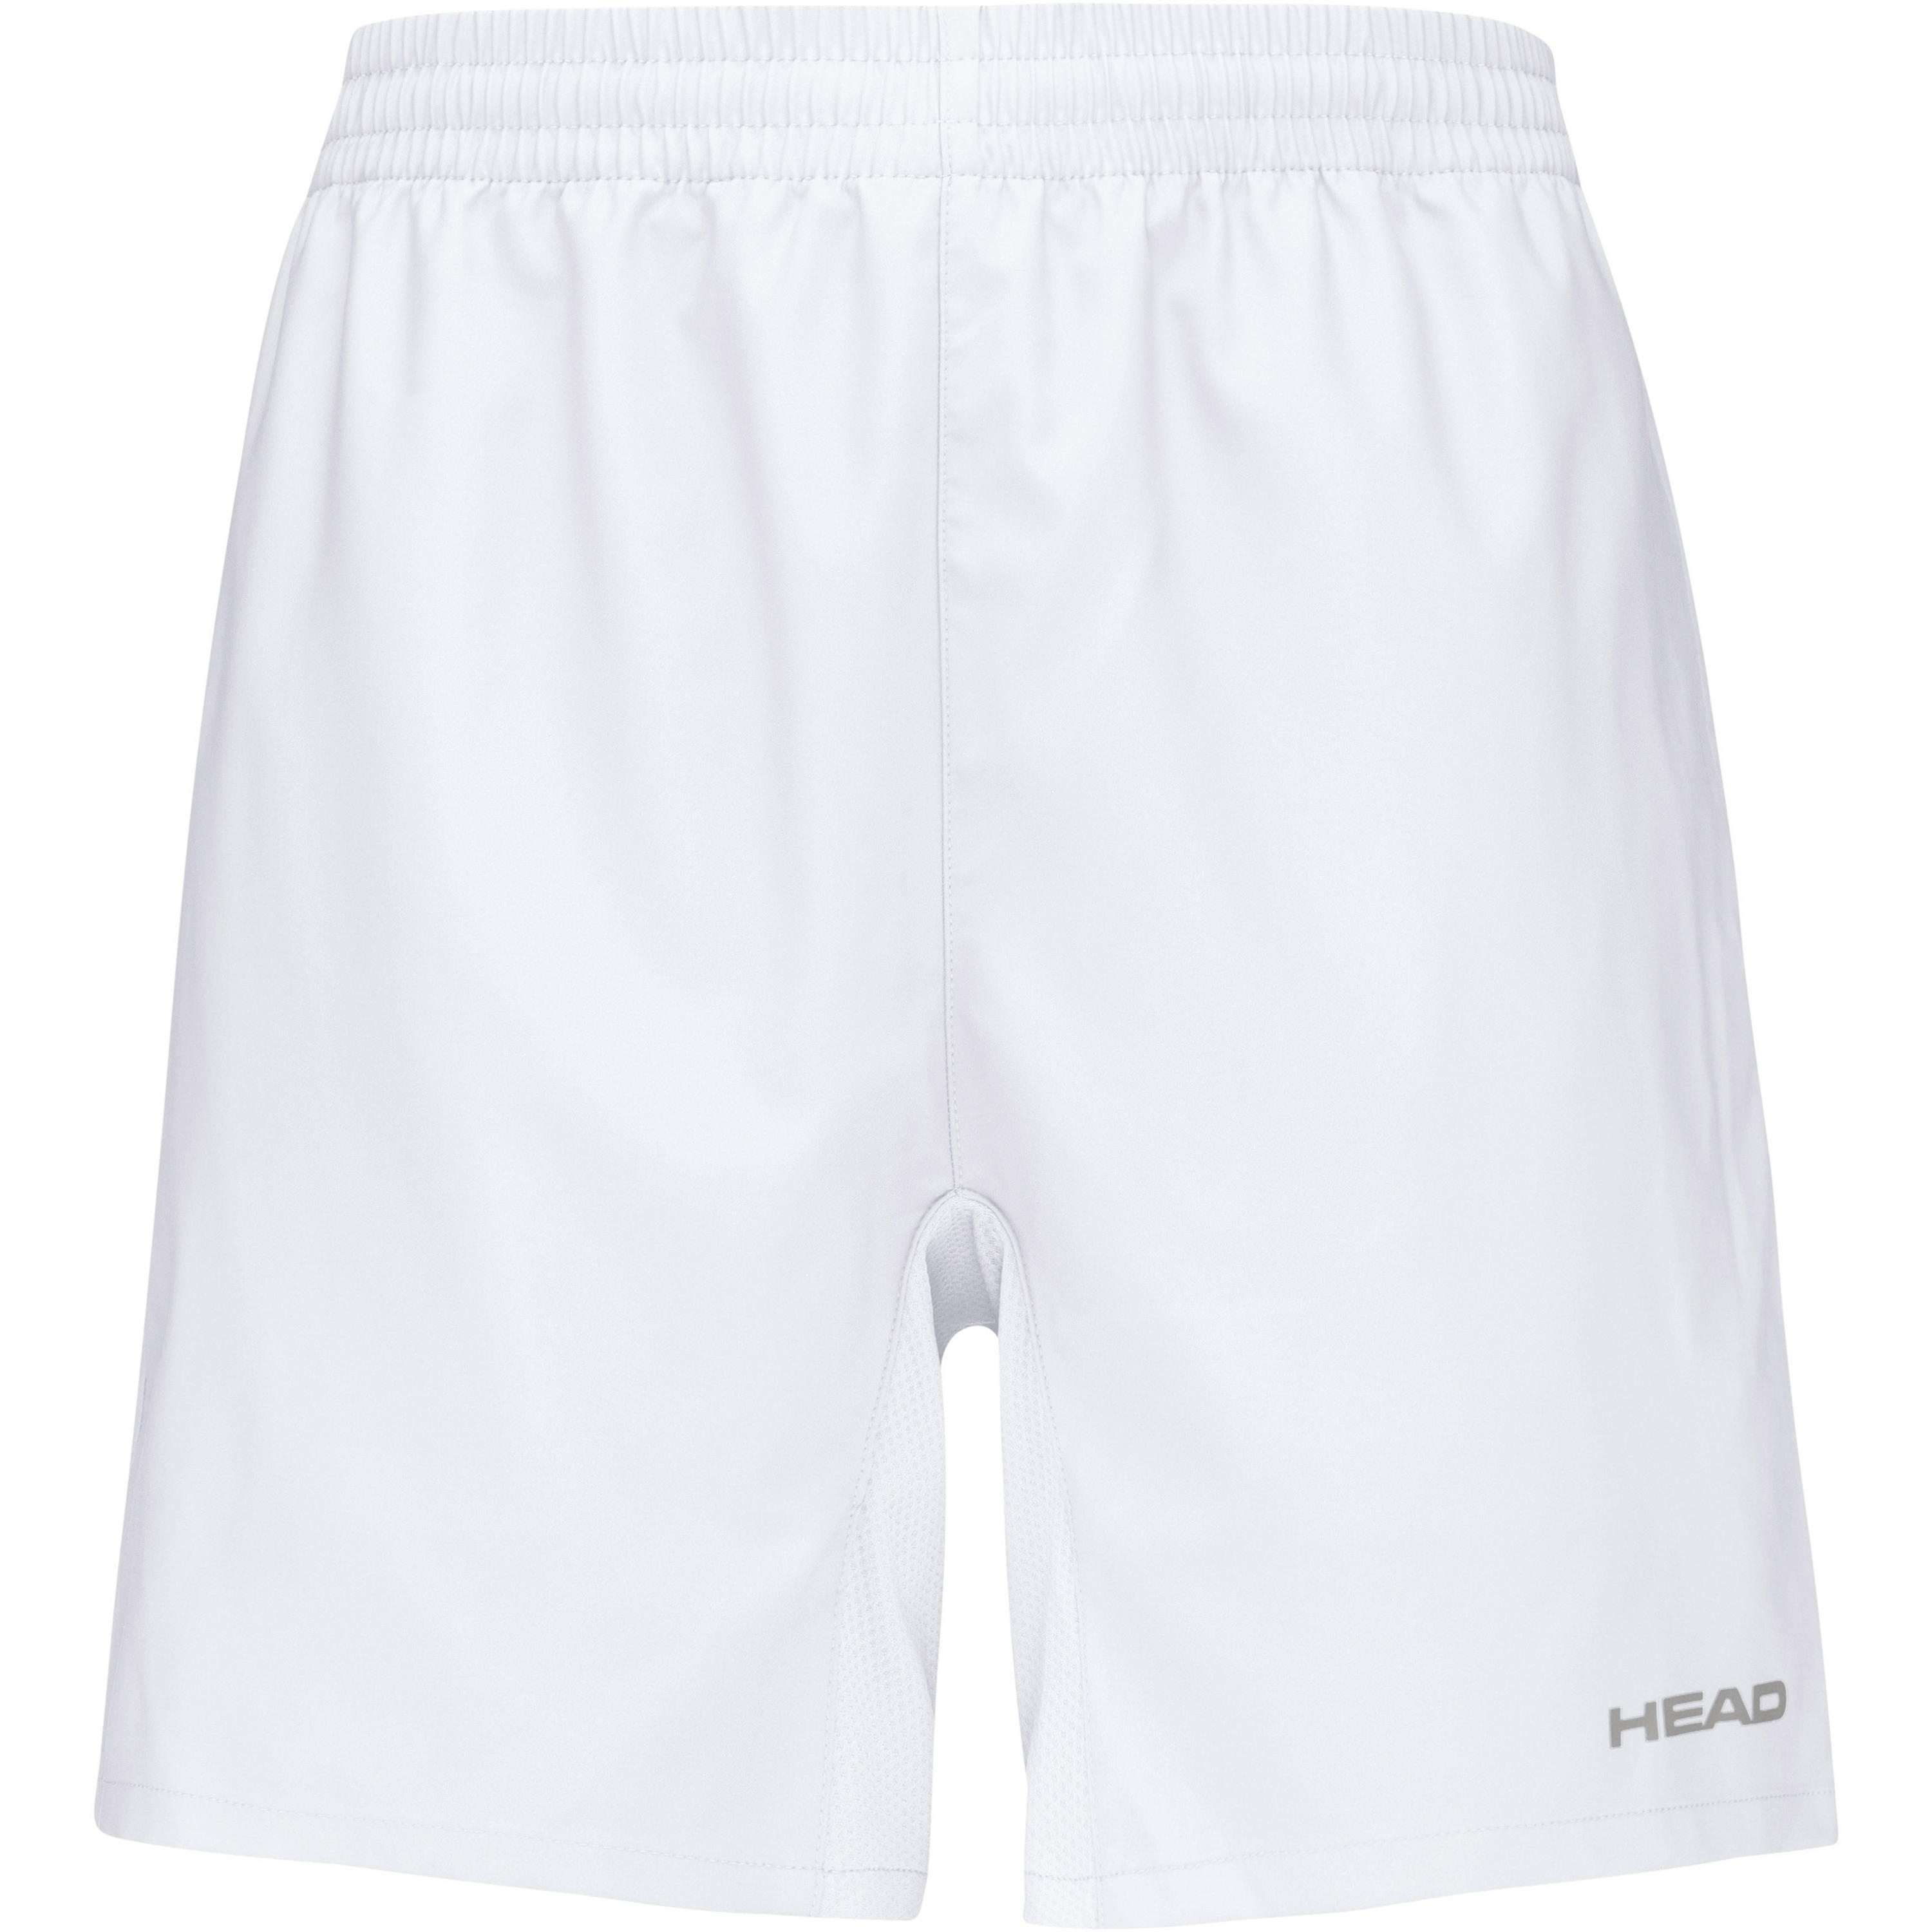 HEAD CLUB Tennisshorts Jungen in white, Größe 140 - weiß